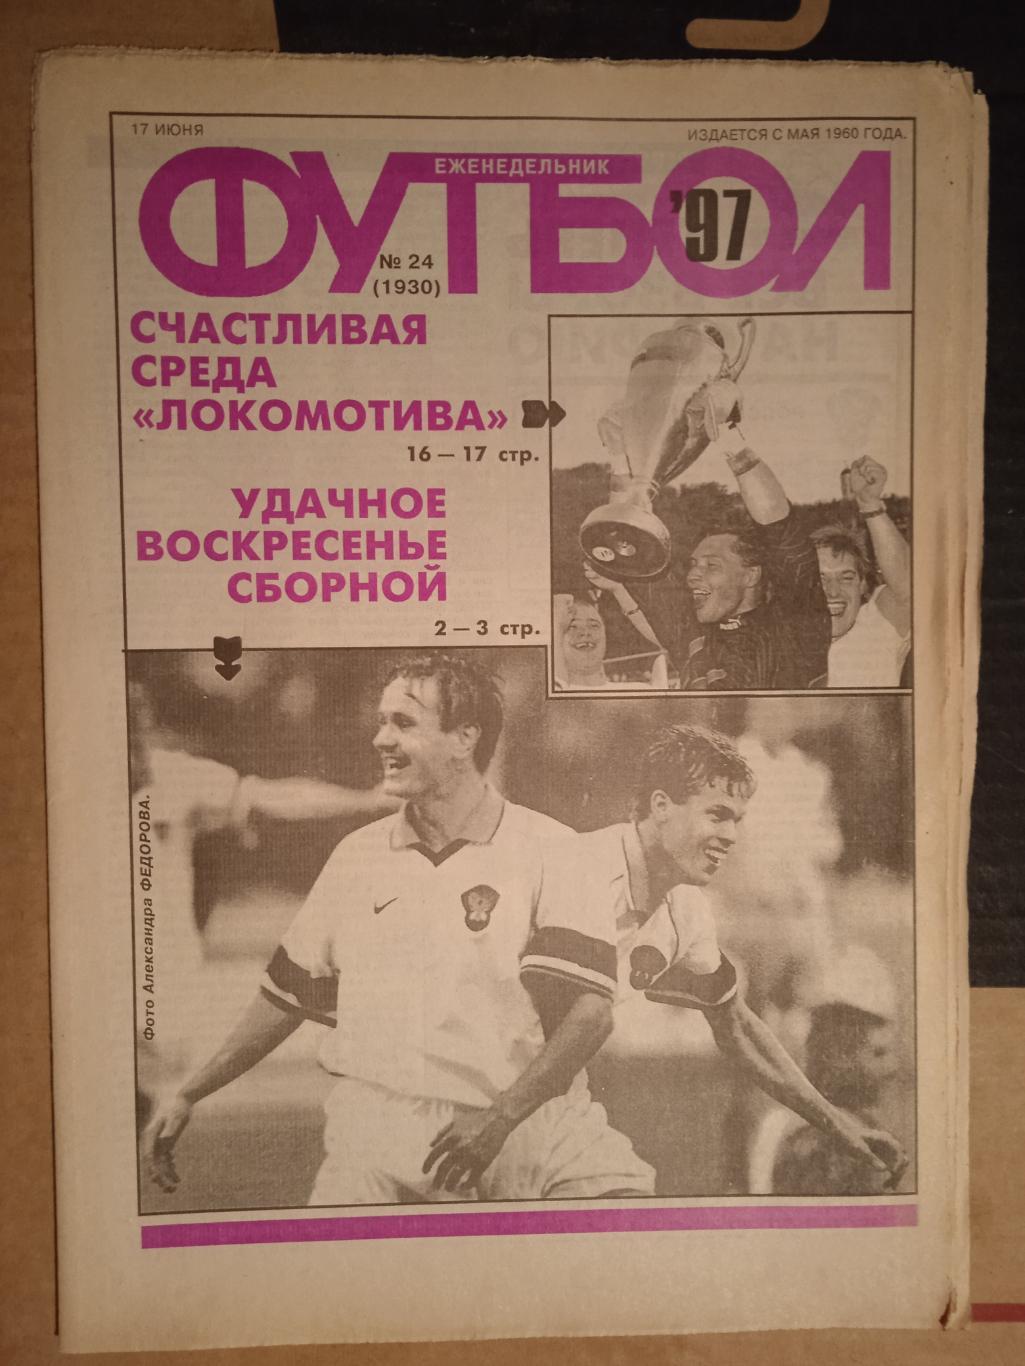 Еженедельник Футбол №24 1997